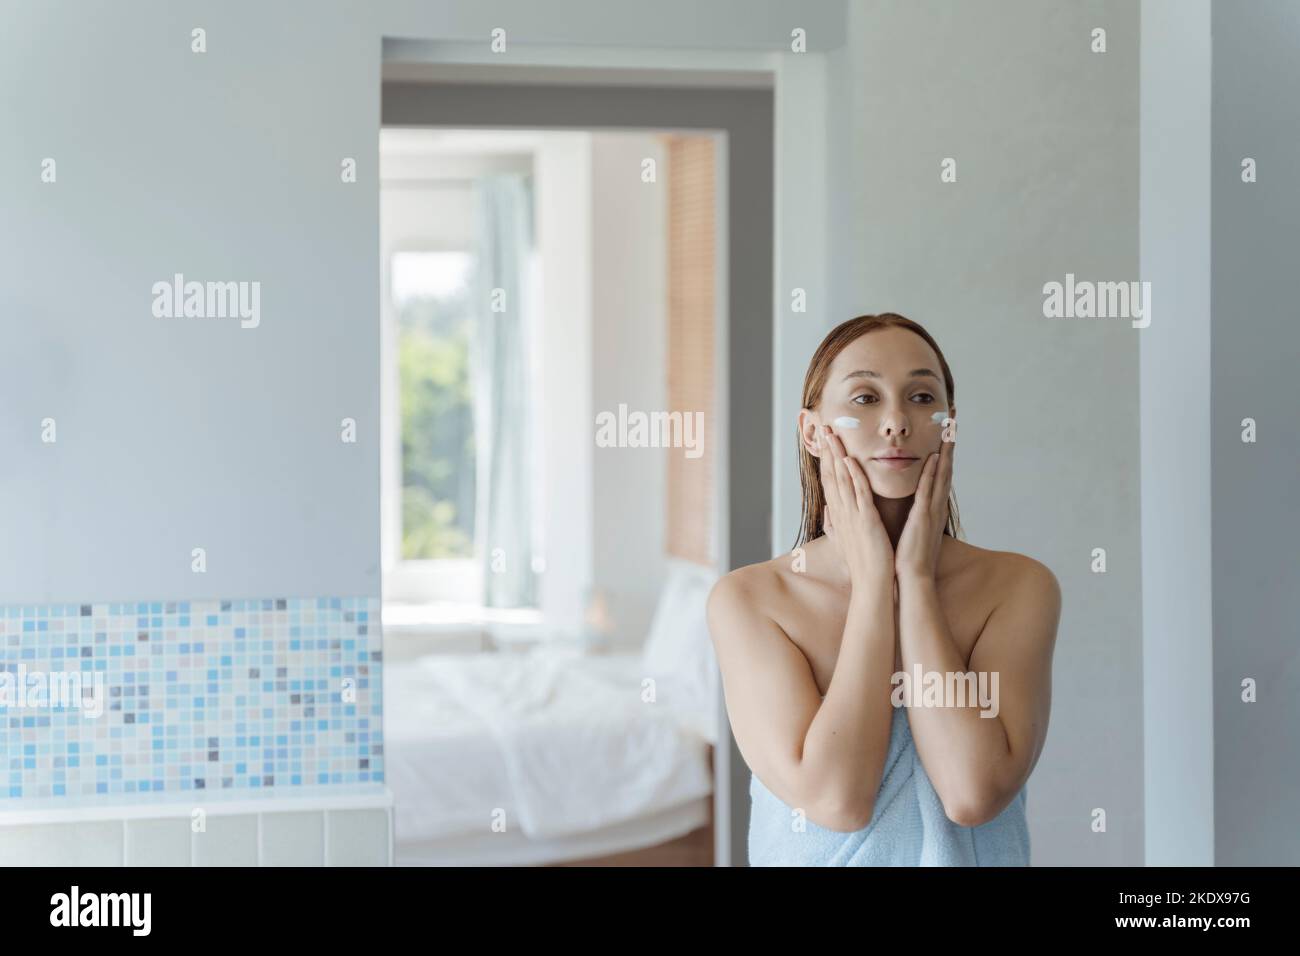 Die junge Frau steht nach der Dusche am Spiegel im Badezimmer und gibt ihr Creme auf das Gesicht. Junge Frau verwendet eine Gesichtscreme. Weichfokus. Stockfoto